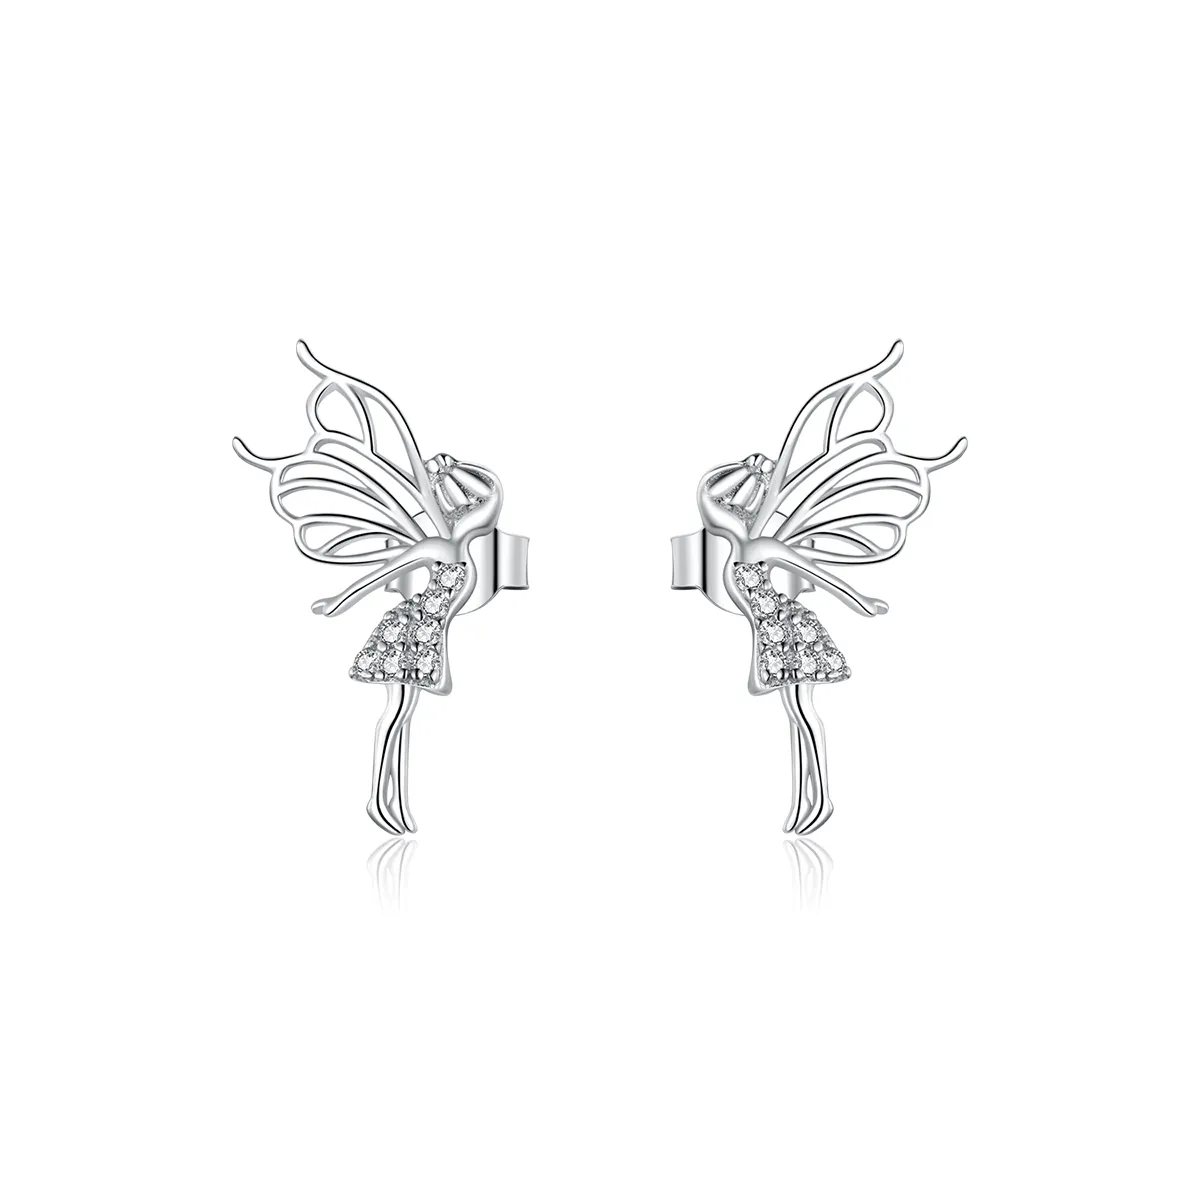 Studuri de ureche în stil Pandora cu înfățișarea unei flori elfice - BSE338